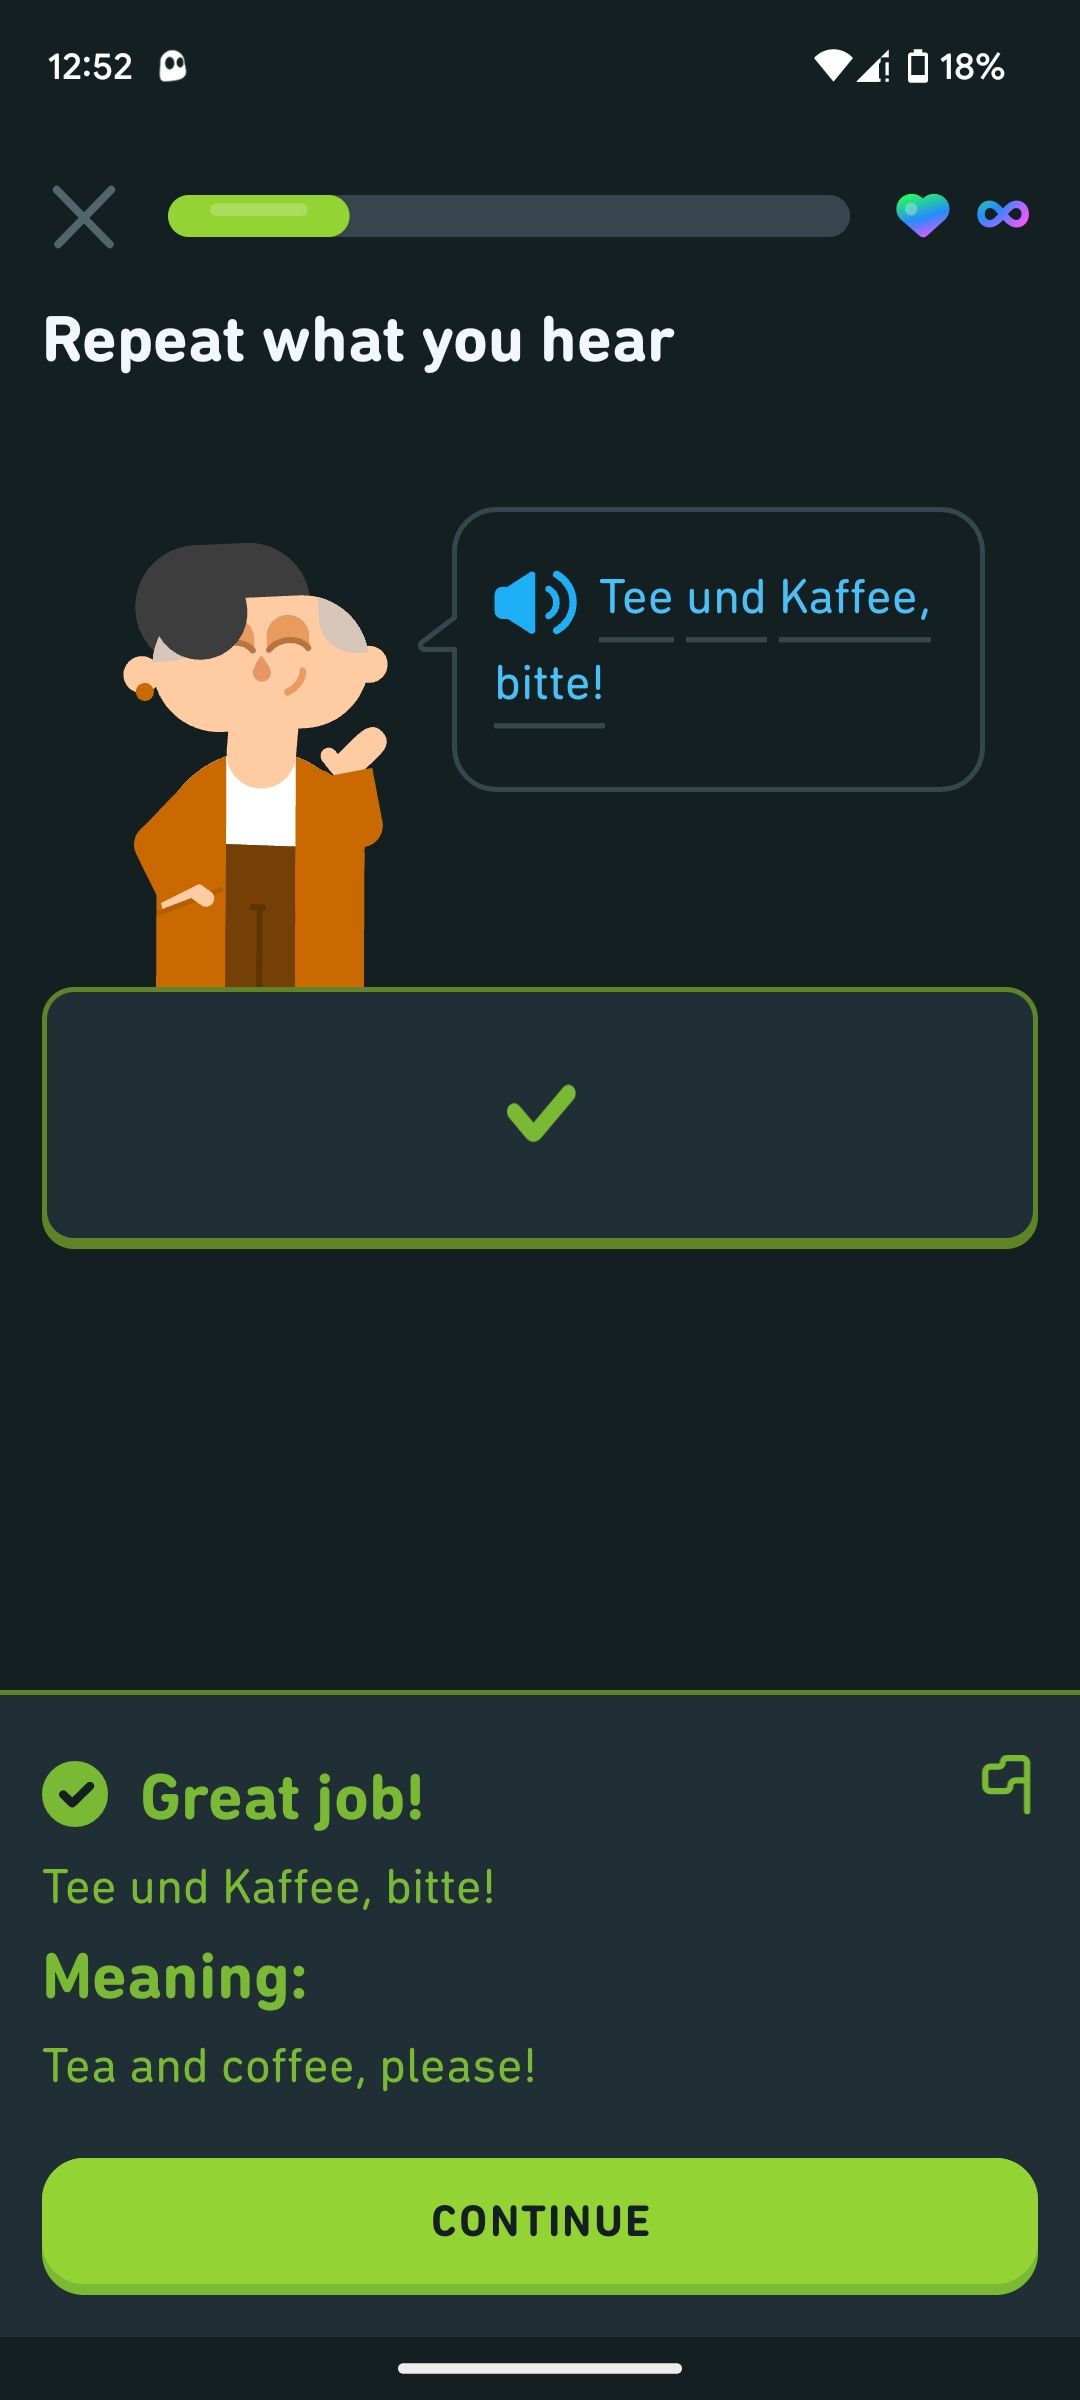 Learning German in Duolingo